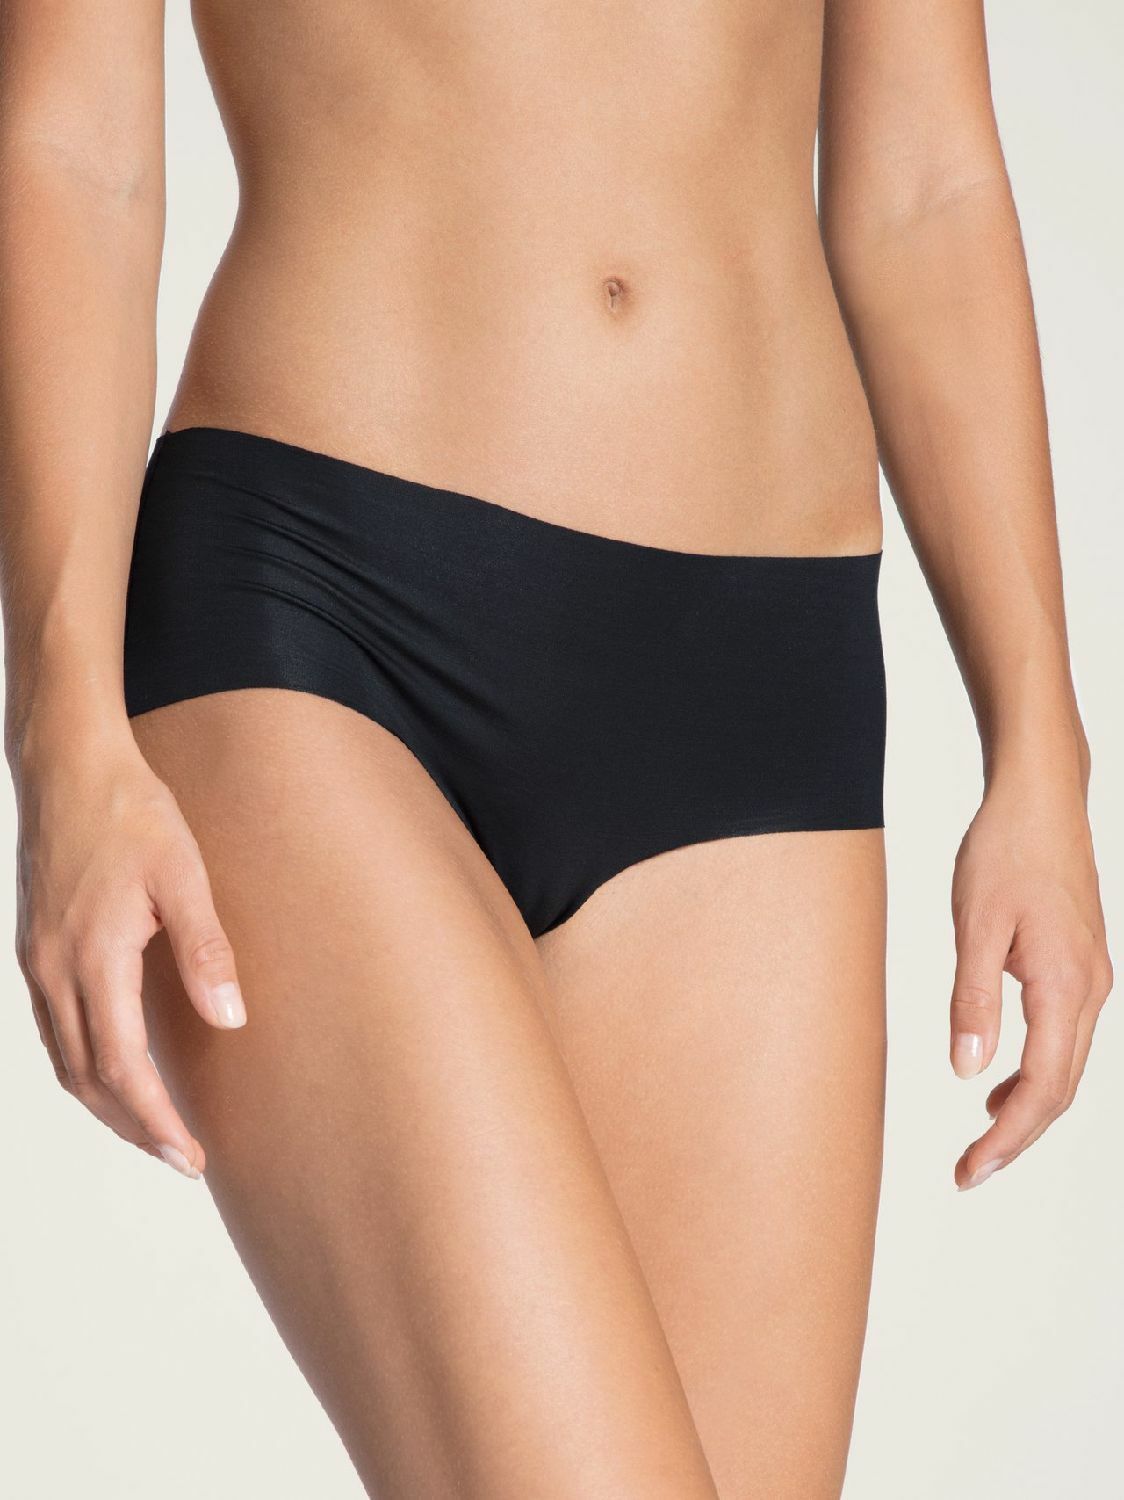 methodologie Egoïsme Minimaal Calida Natural Skin Naadloze Panty Zwart online bestellen